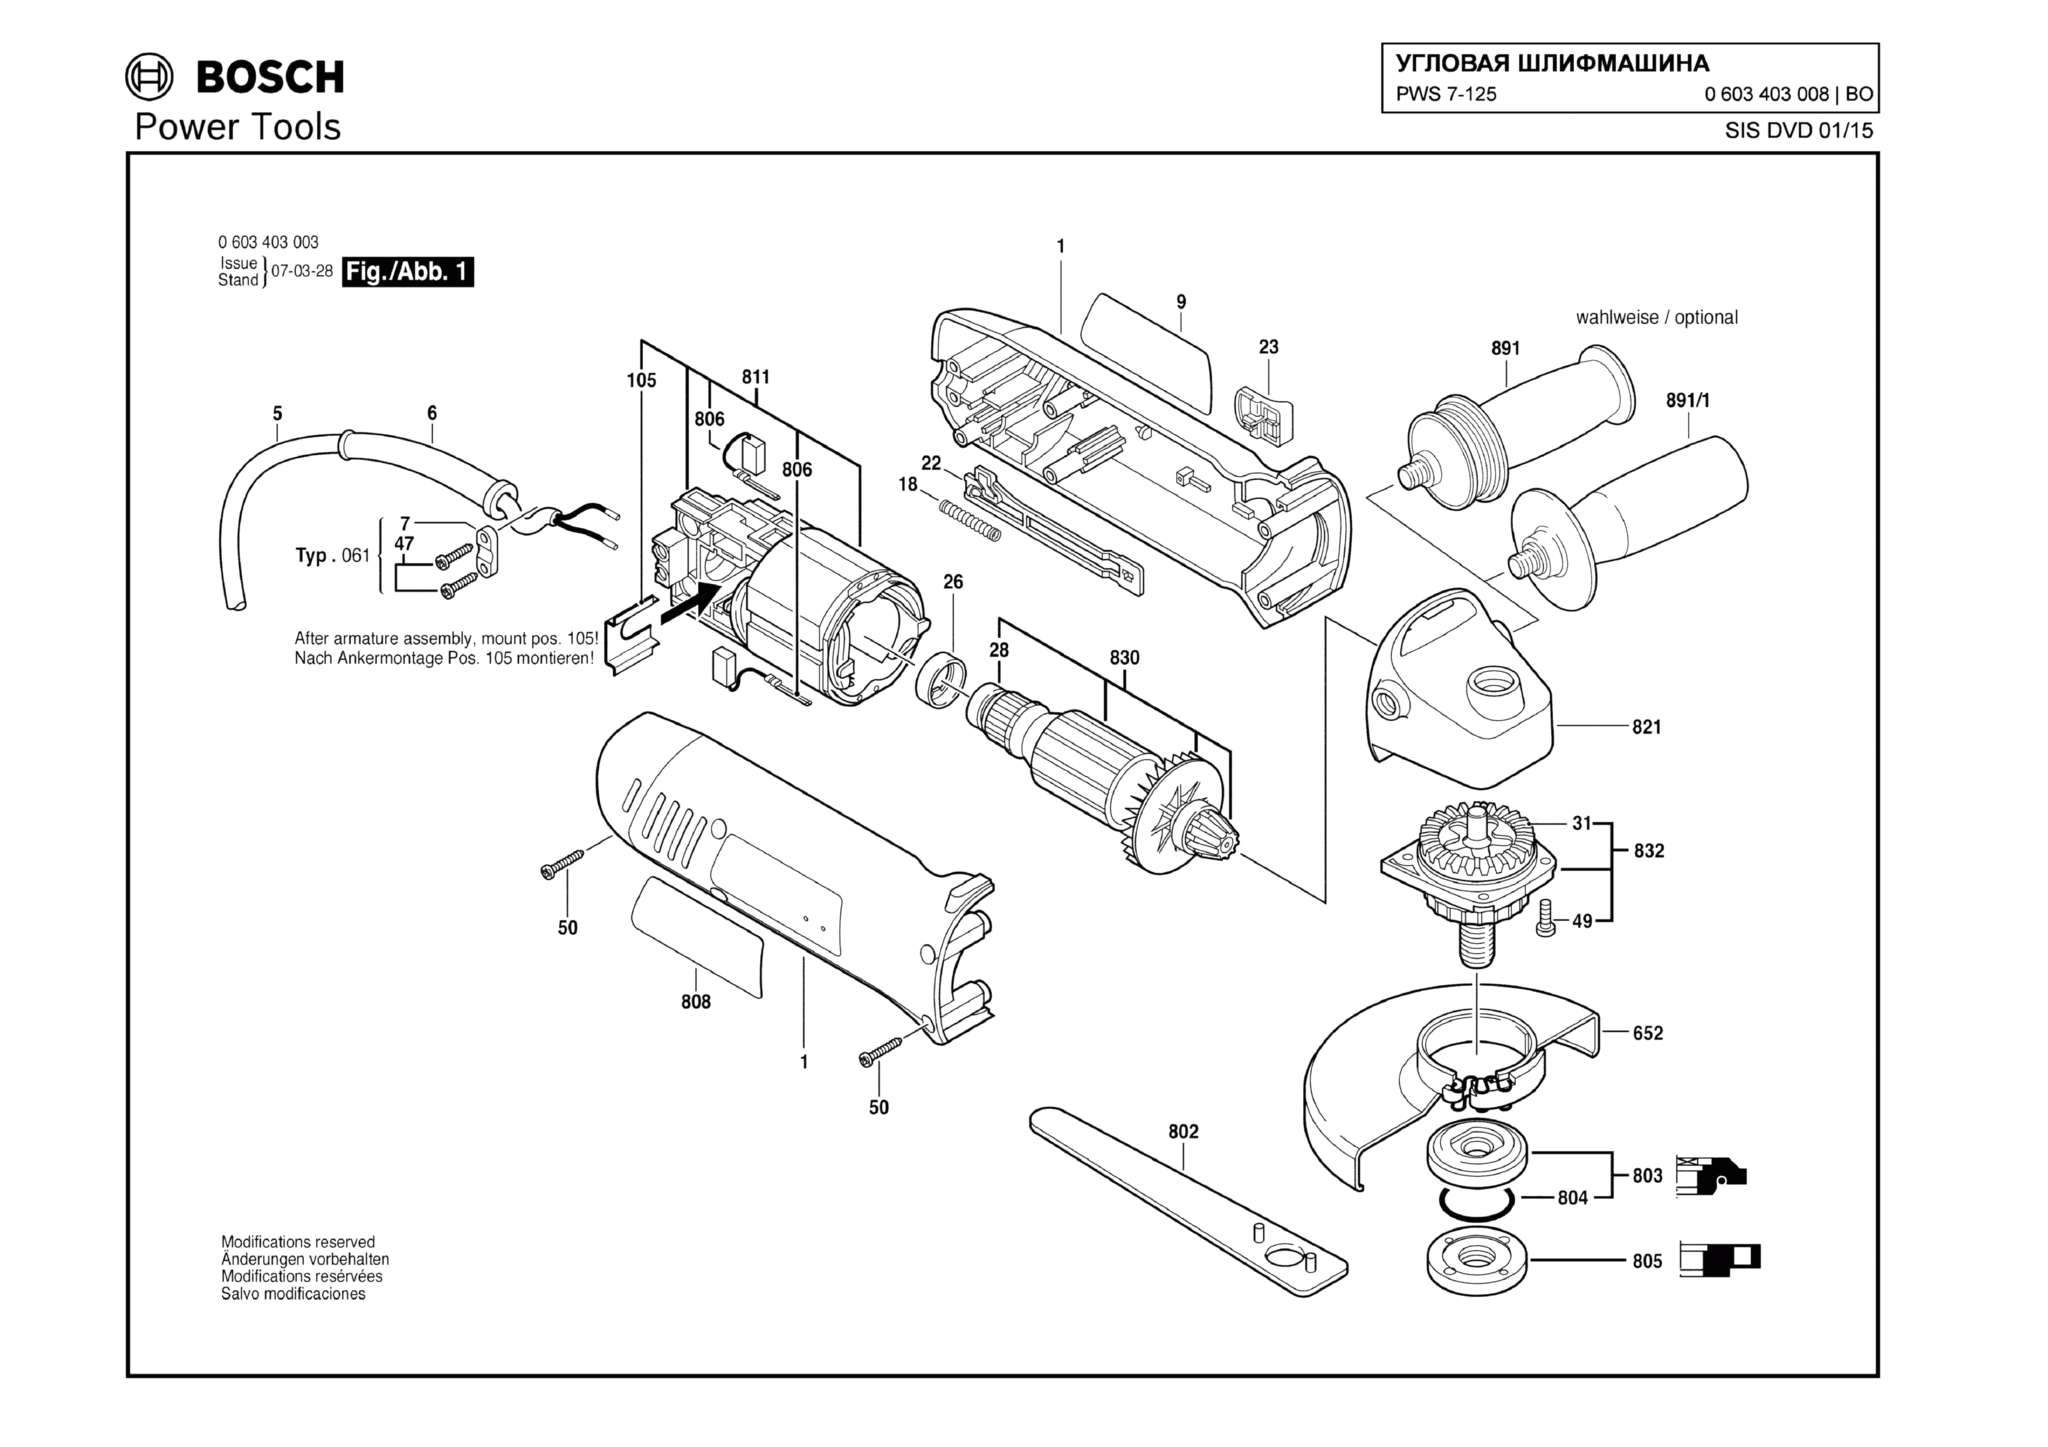 Запчасти, схема и деталировка Bosch PWS 7-125 (ТИП 0603403008)